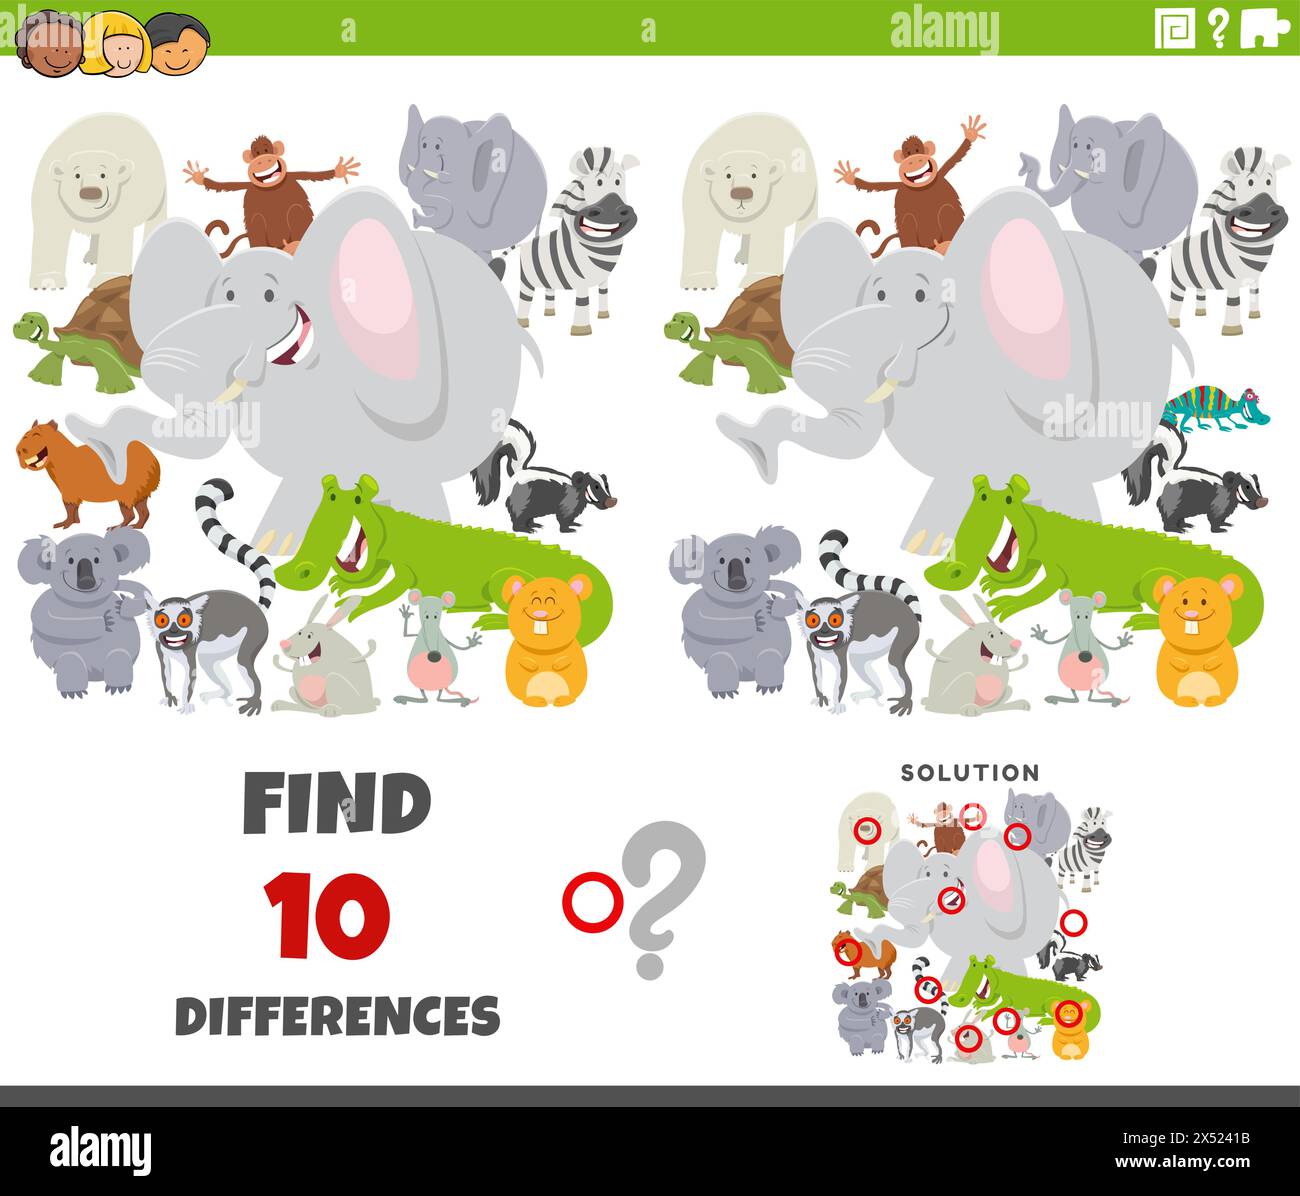 Illustration de dessin animé de trouver les différences entre les images jeu éducatif avec le groupe de caractères d'animaux sauvages Illustration de Vecteur